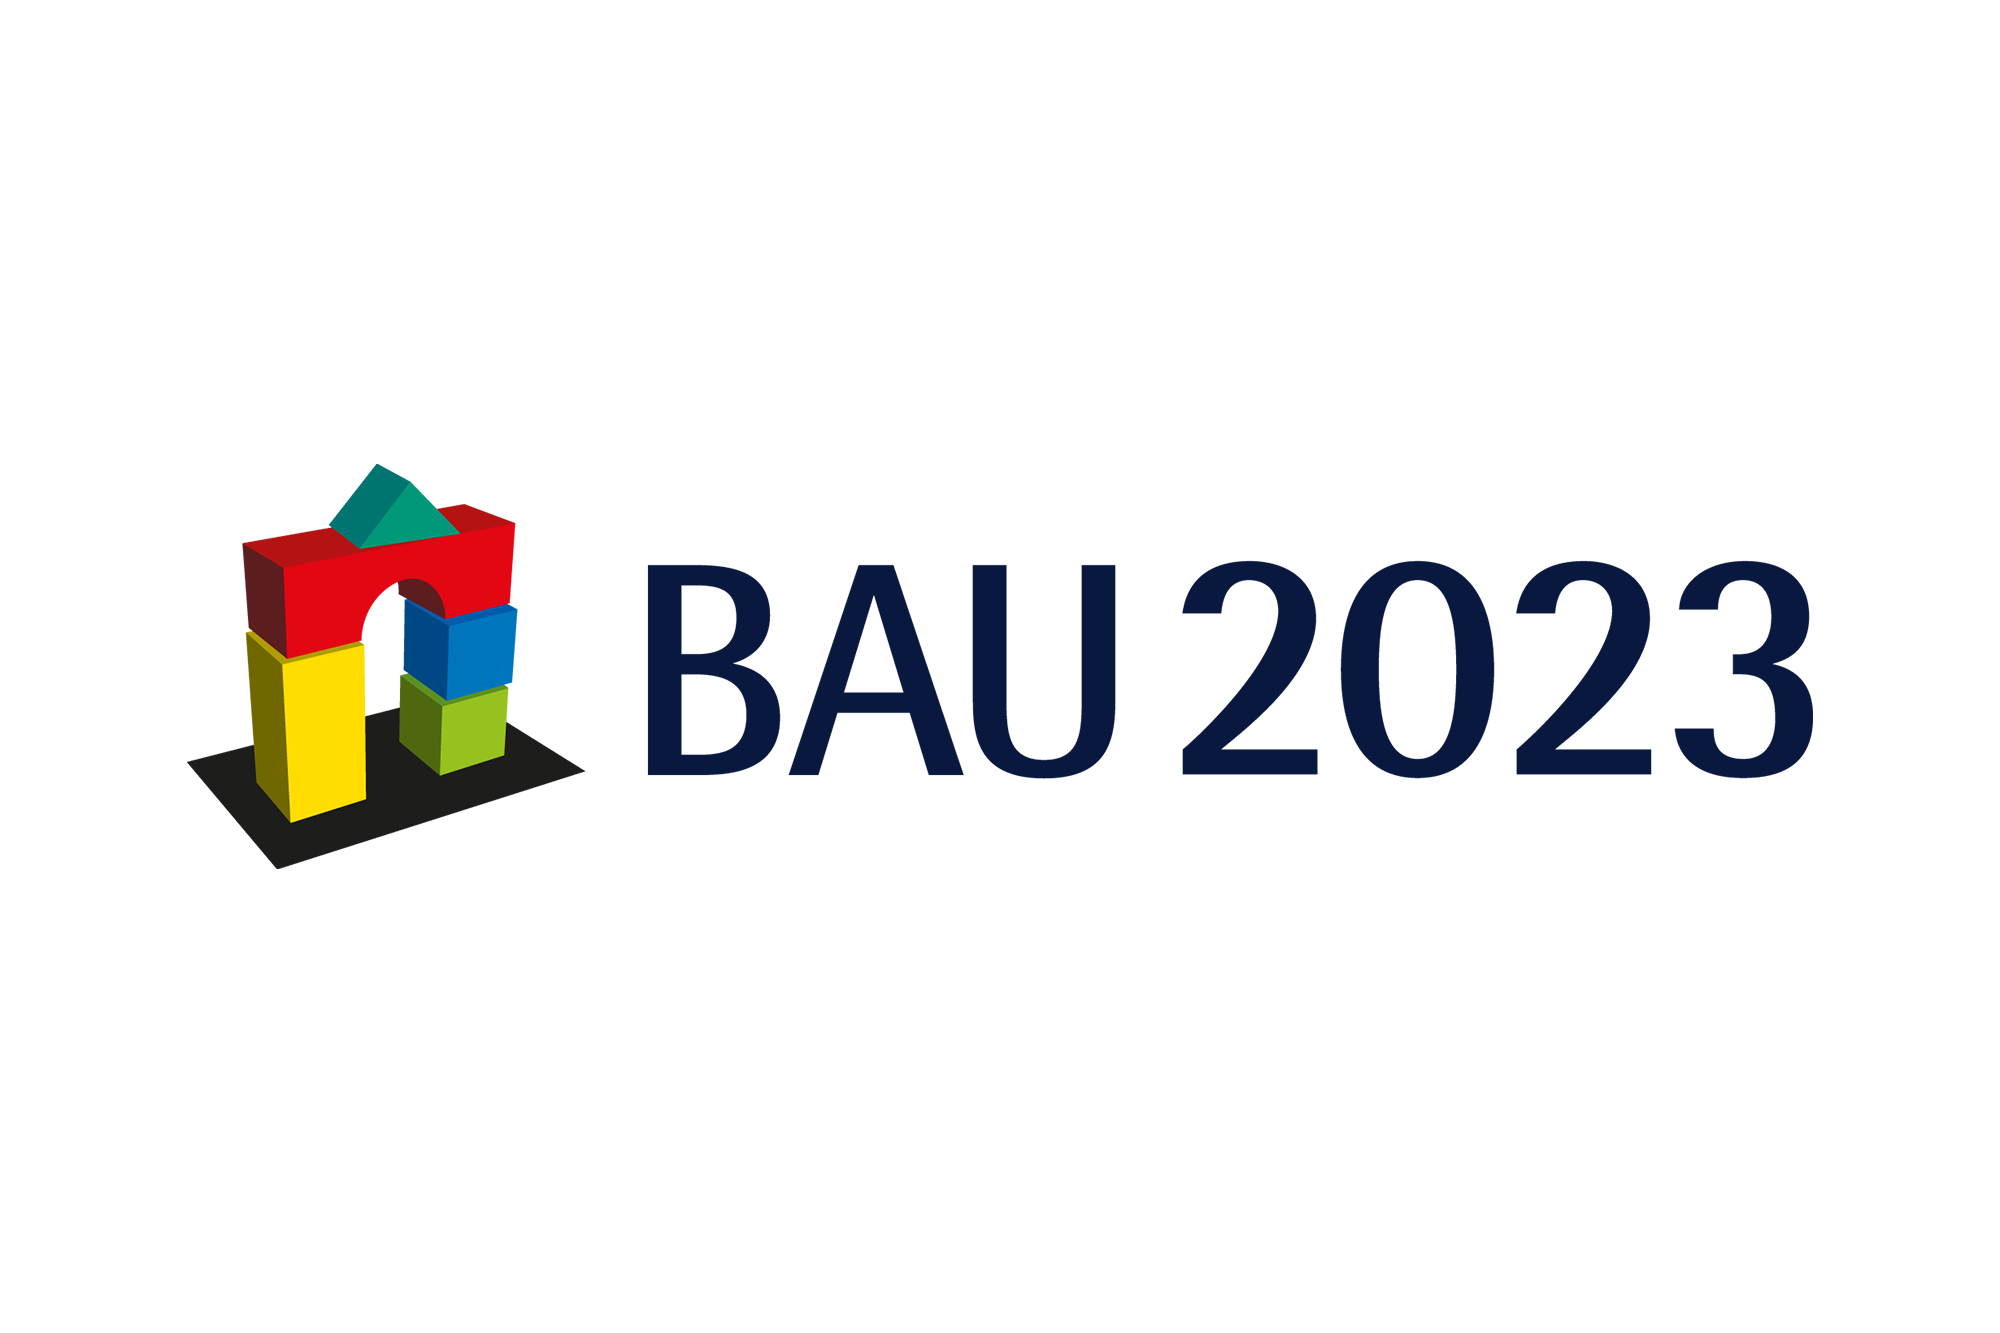 BAU_logo_4c_2000_2.png